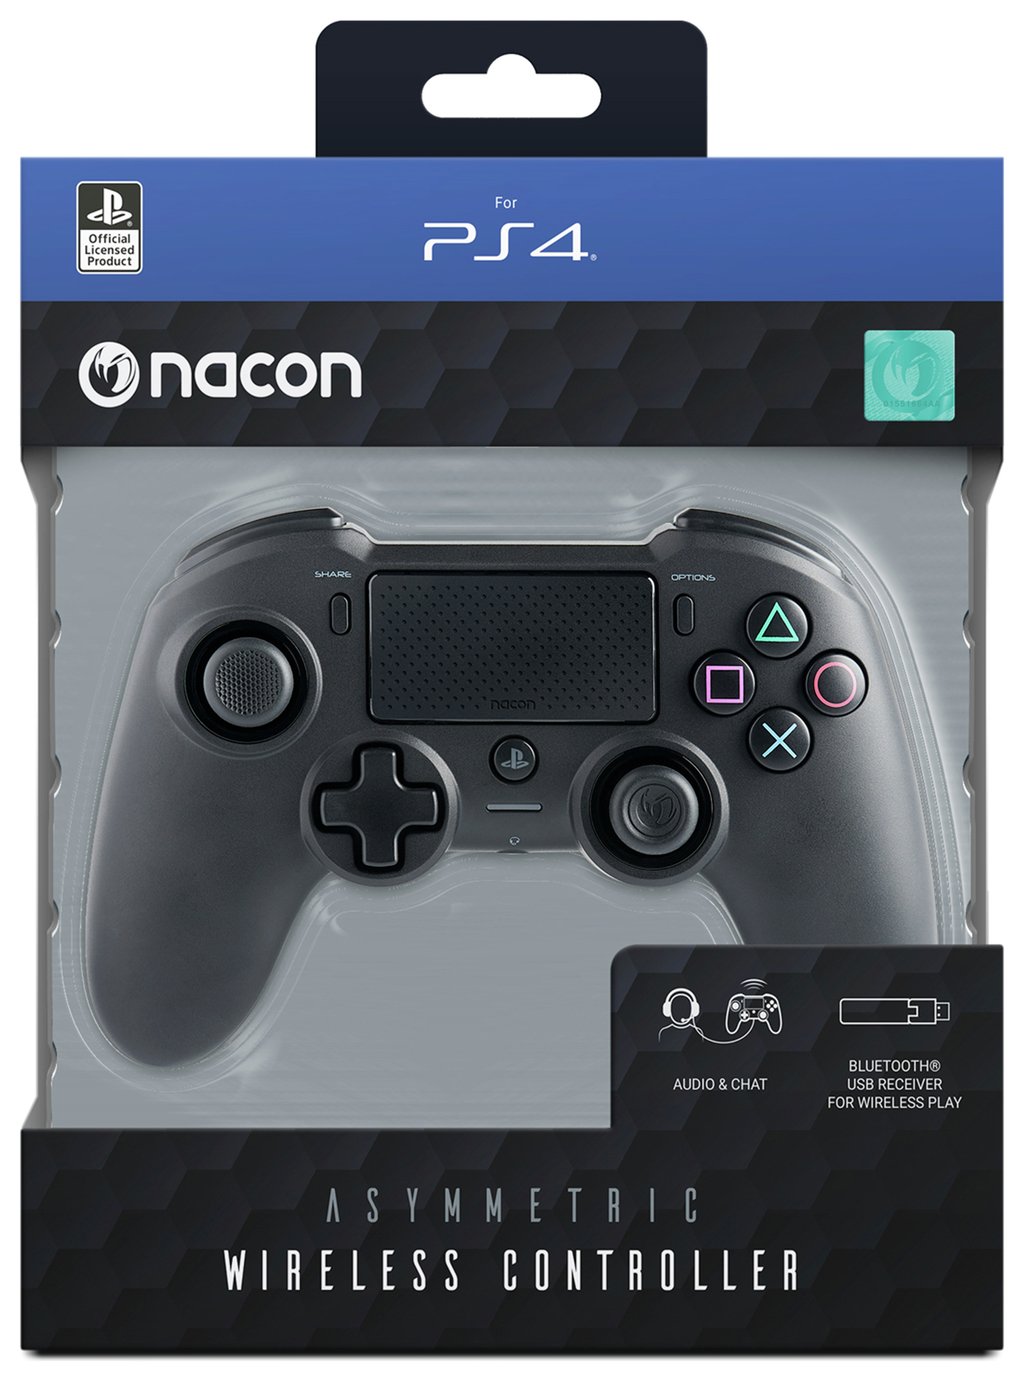 Nacon Asymmetric PS4 Wireless Controller Review